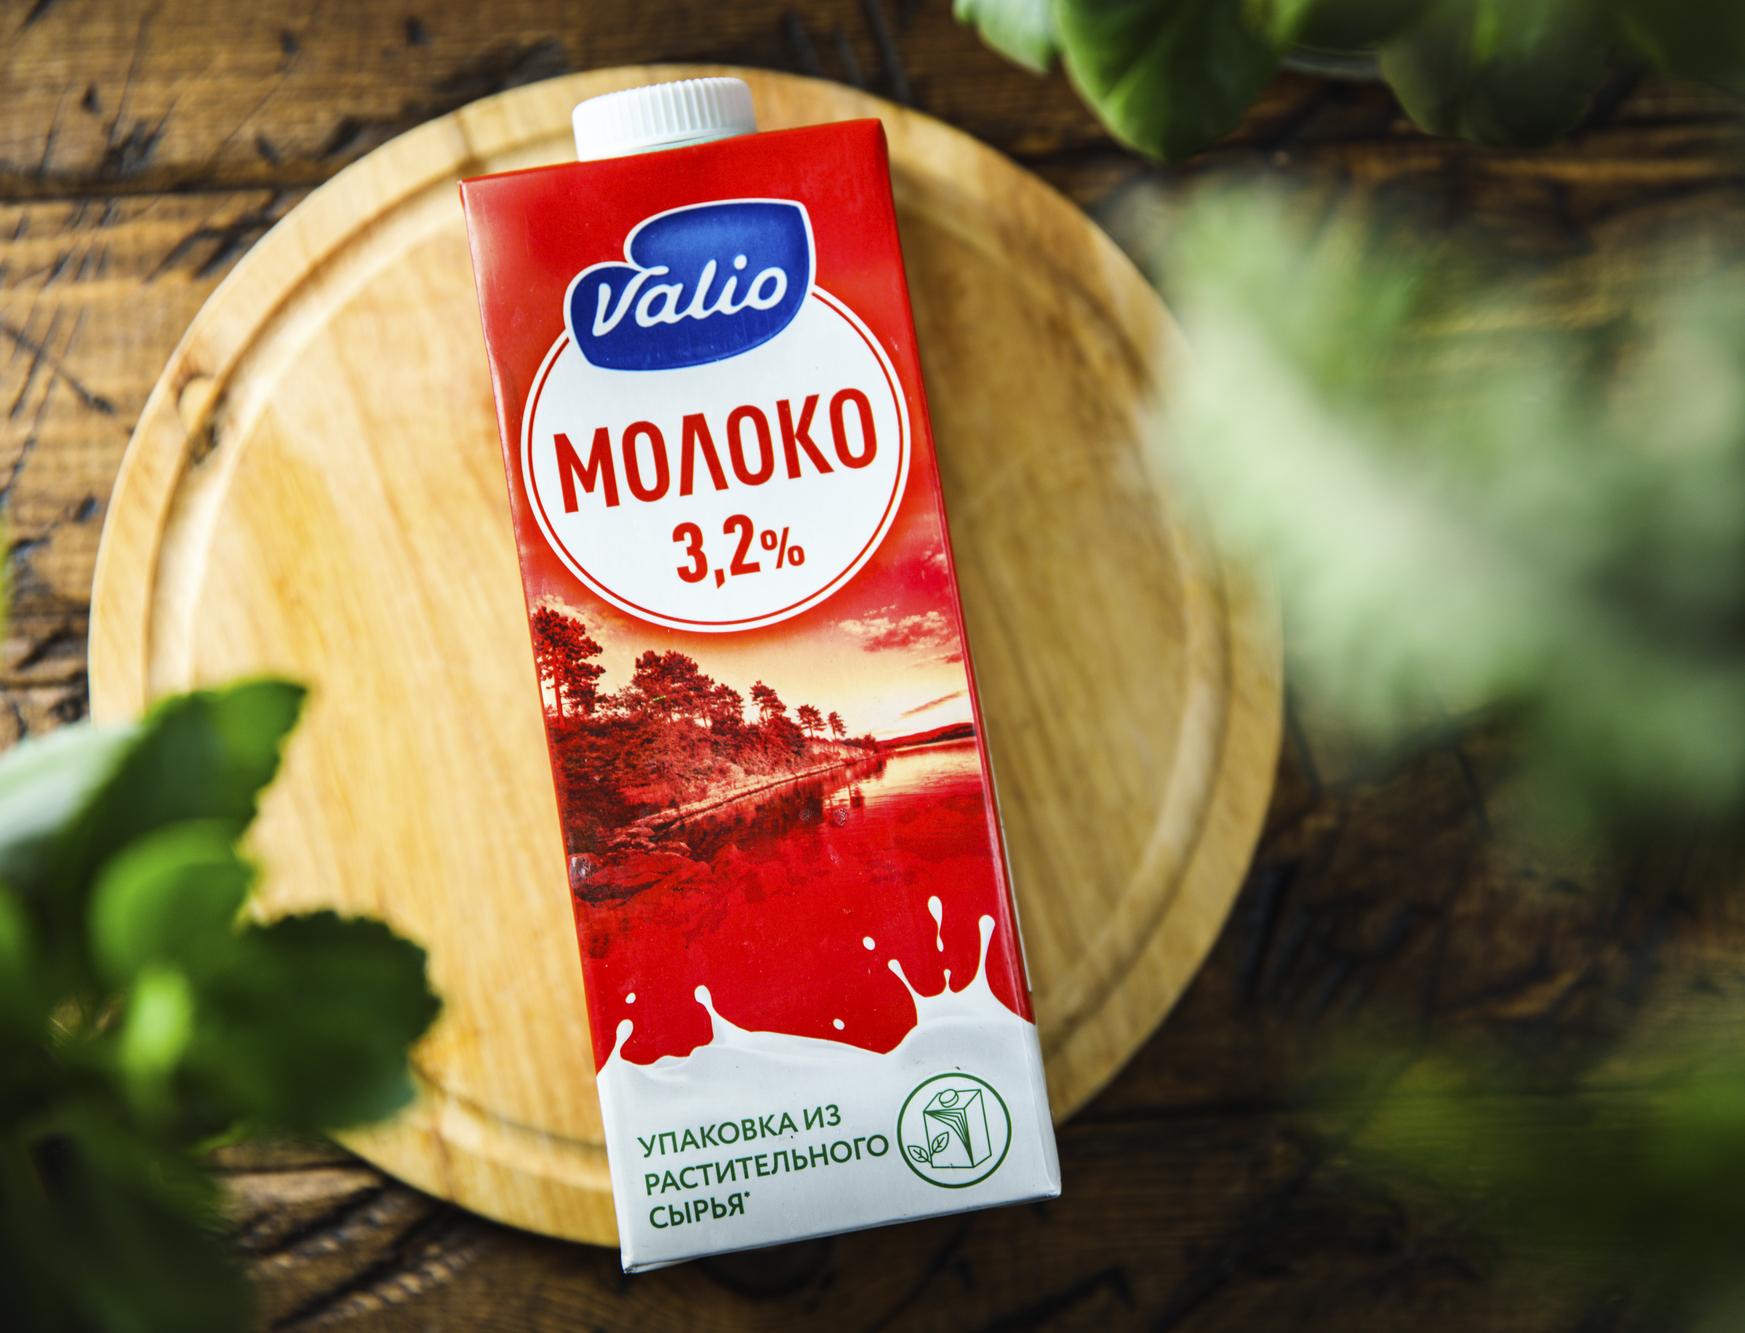 Valio первой в России будет продавать молоко в упаковке из растительного сырья